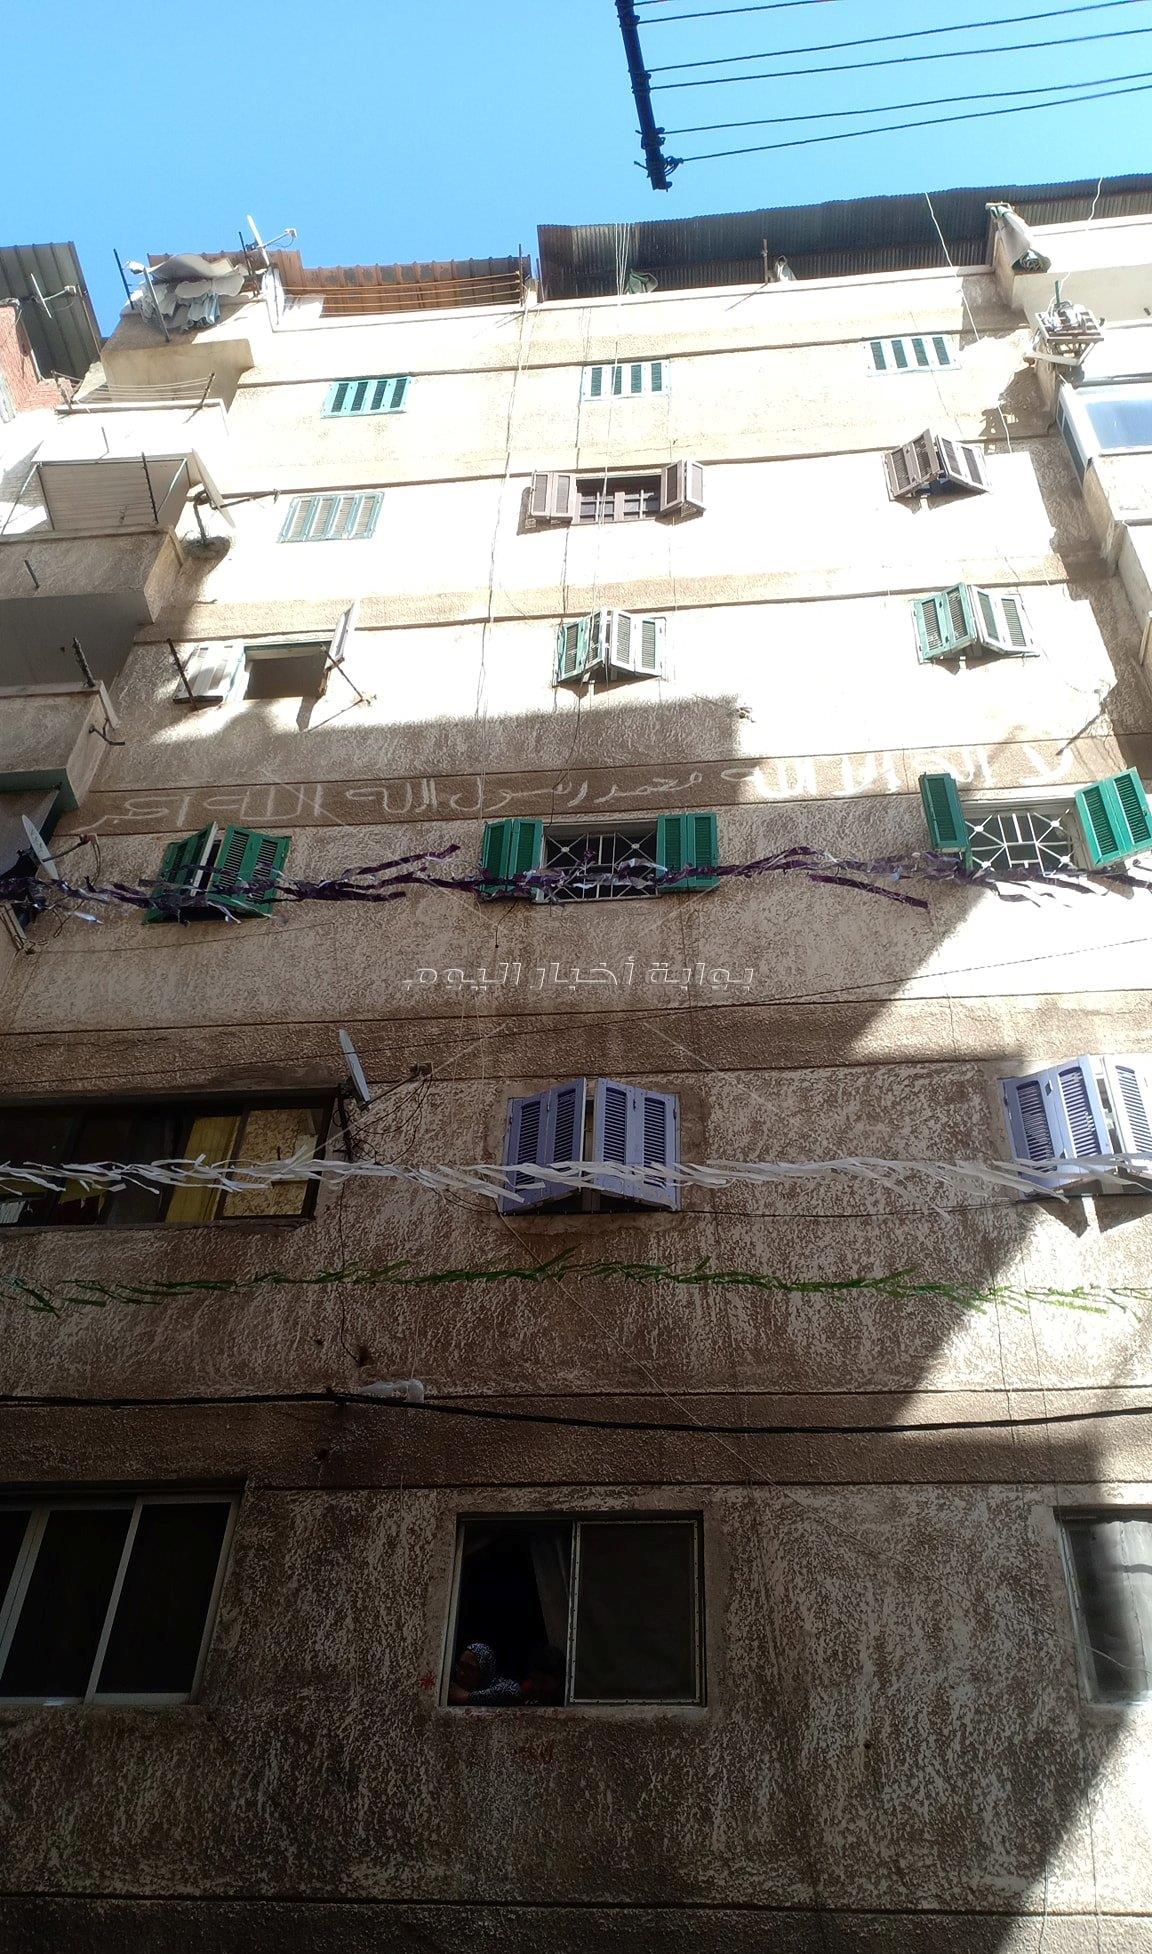 مصرع طفلين في حريق شقة سكنية بسيدي بشر بالإسكندرية 